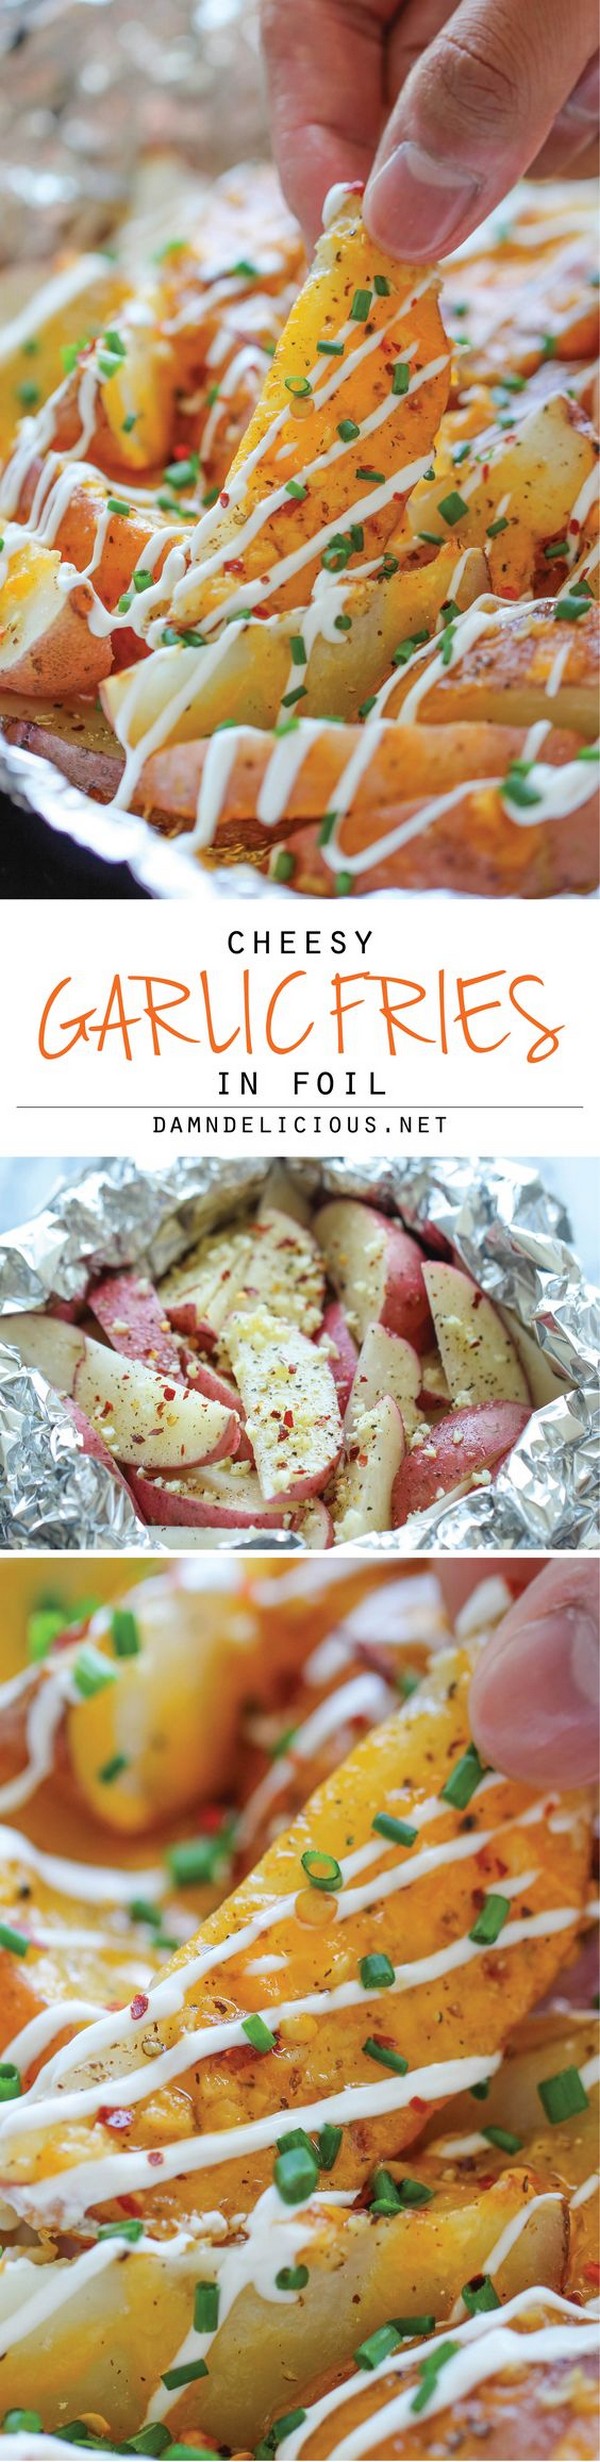 Cheesy Garlic Fries In Foil